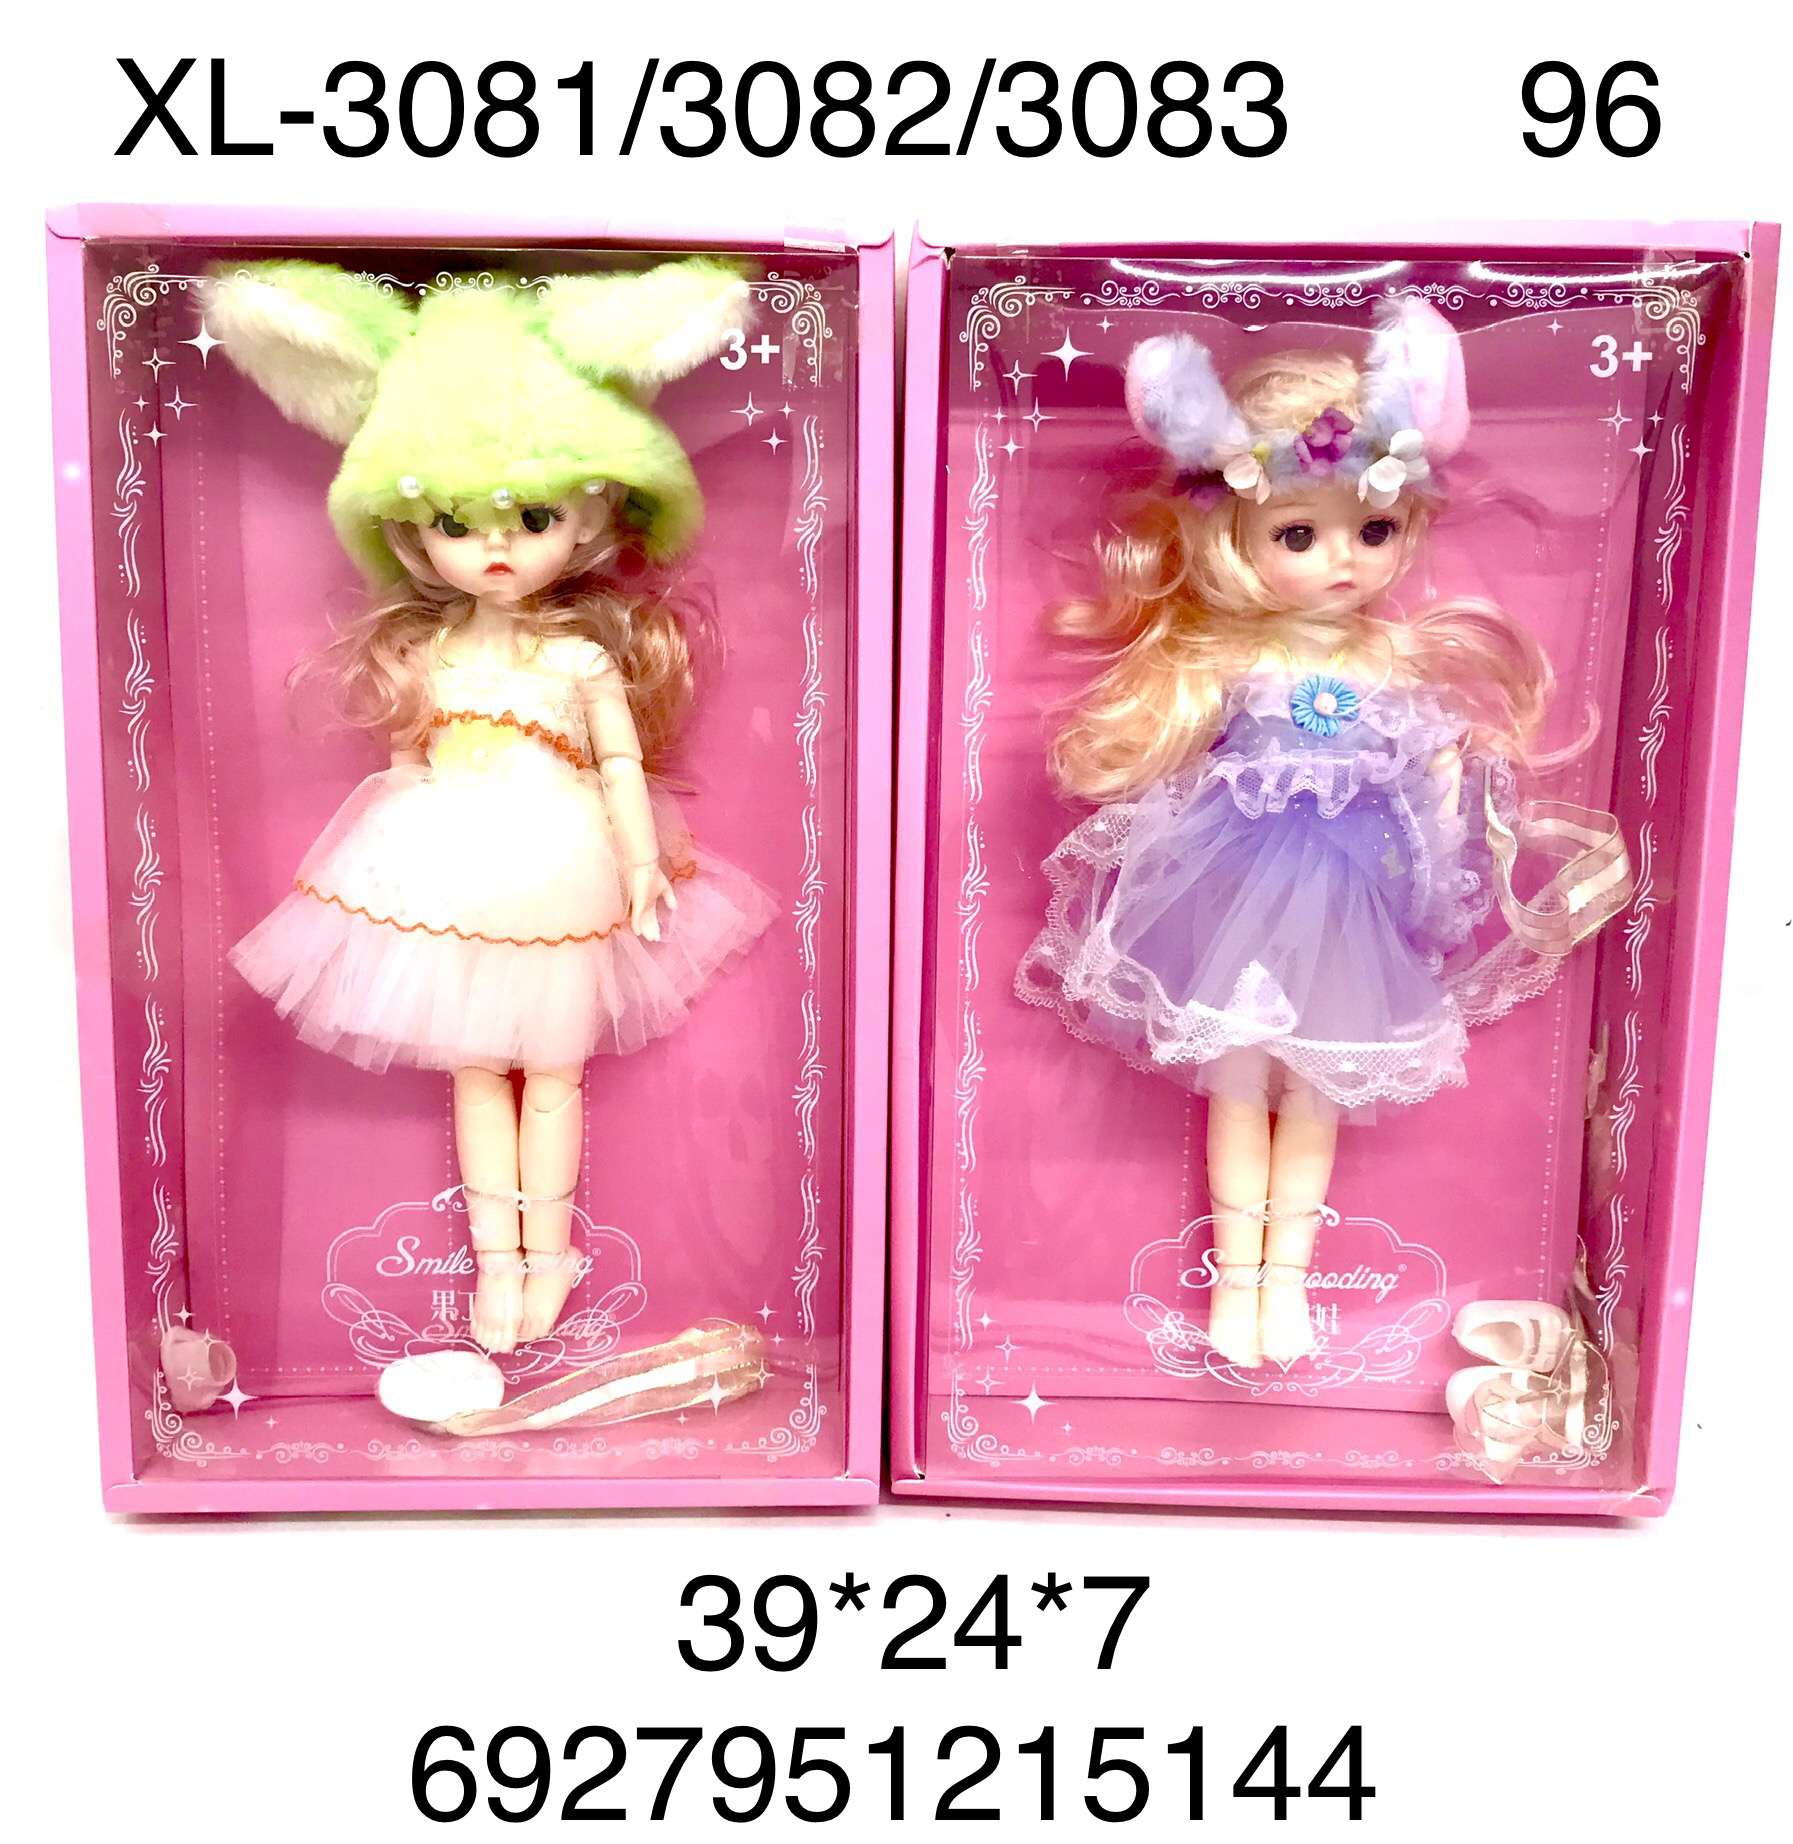 Кукла XL-3081/3082/3083 Smile в ассортименте